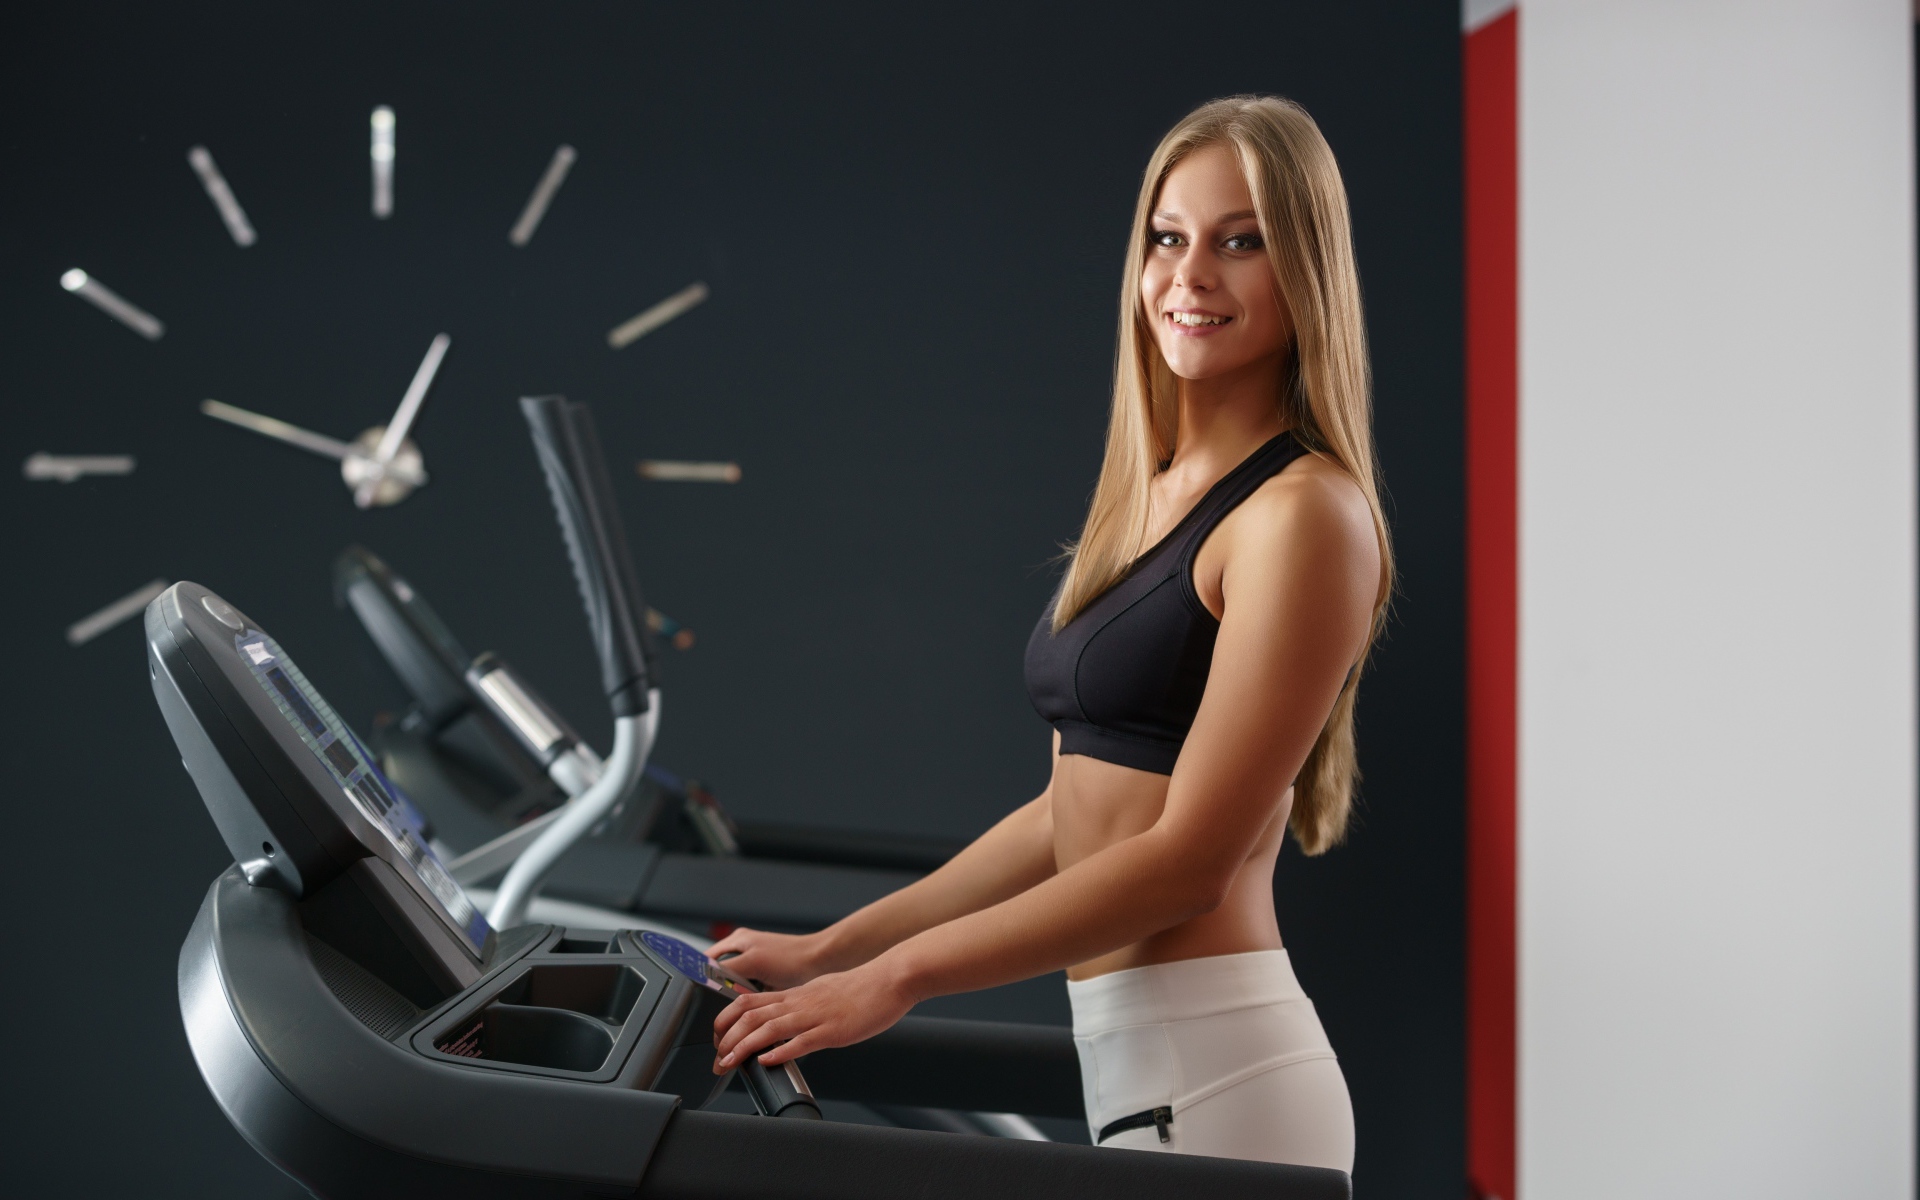 Girl athlete on the treadmill